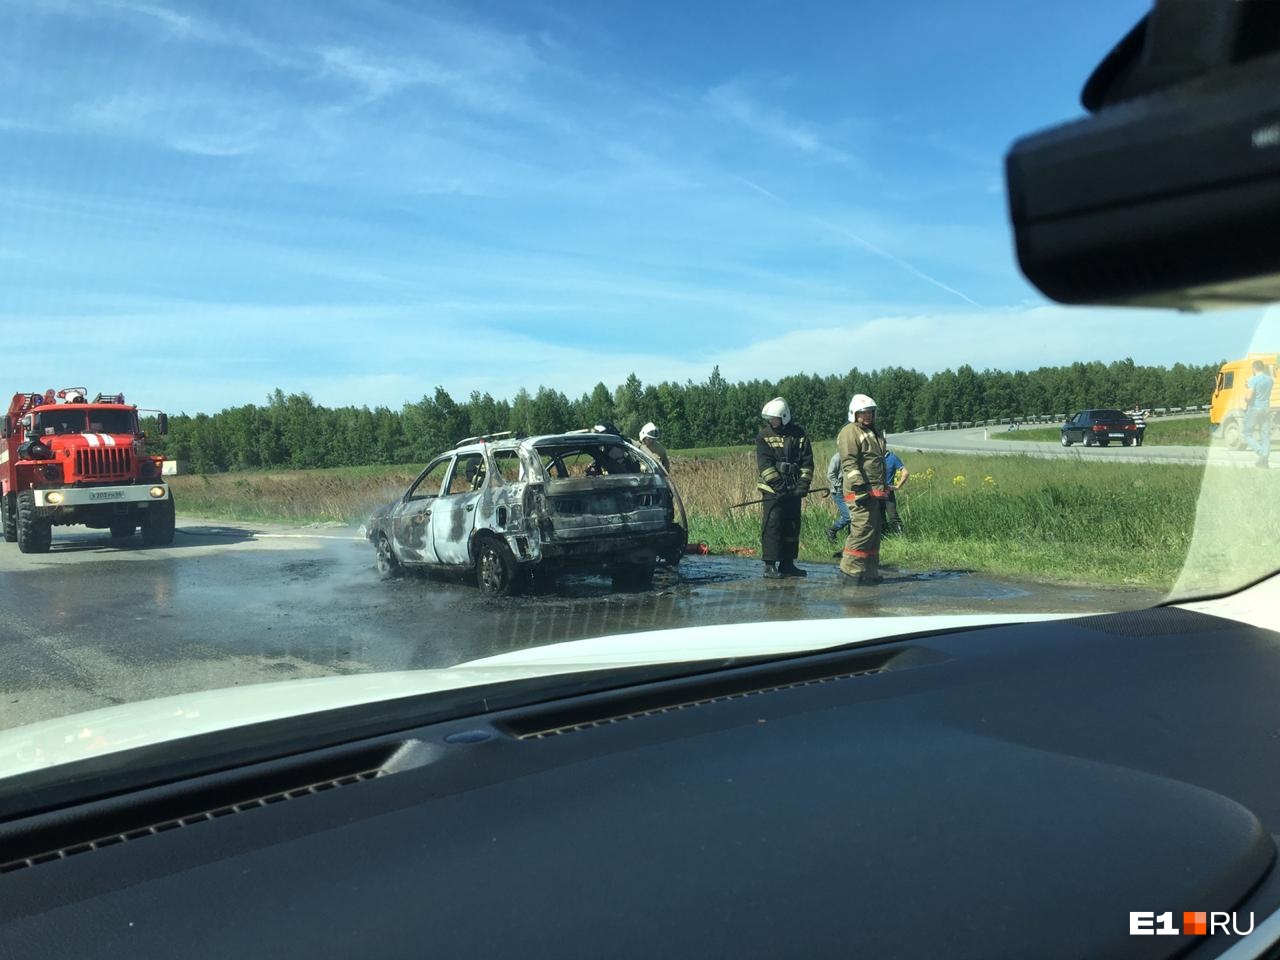 Пожарные оперативно прибыли на место, но спасти машину не удалось